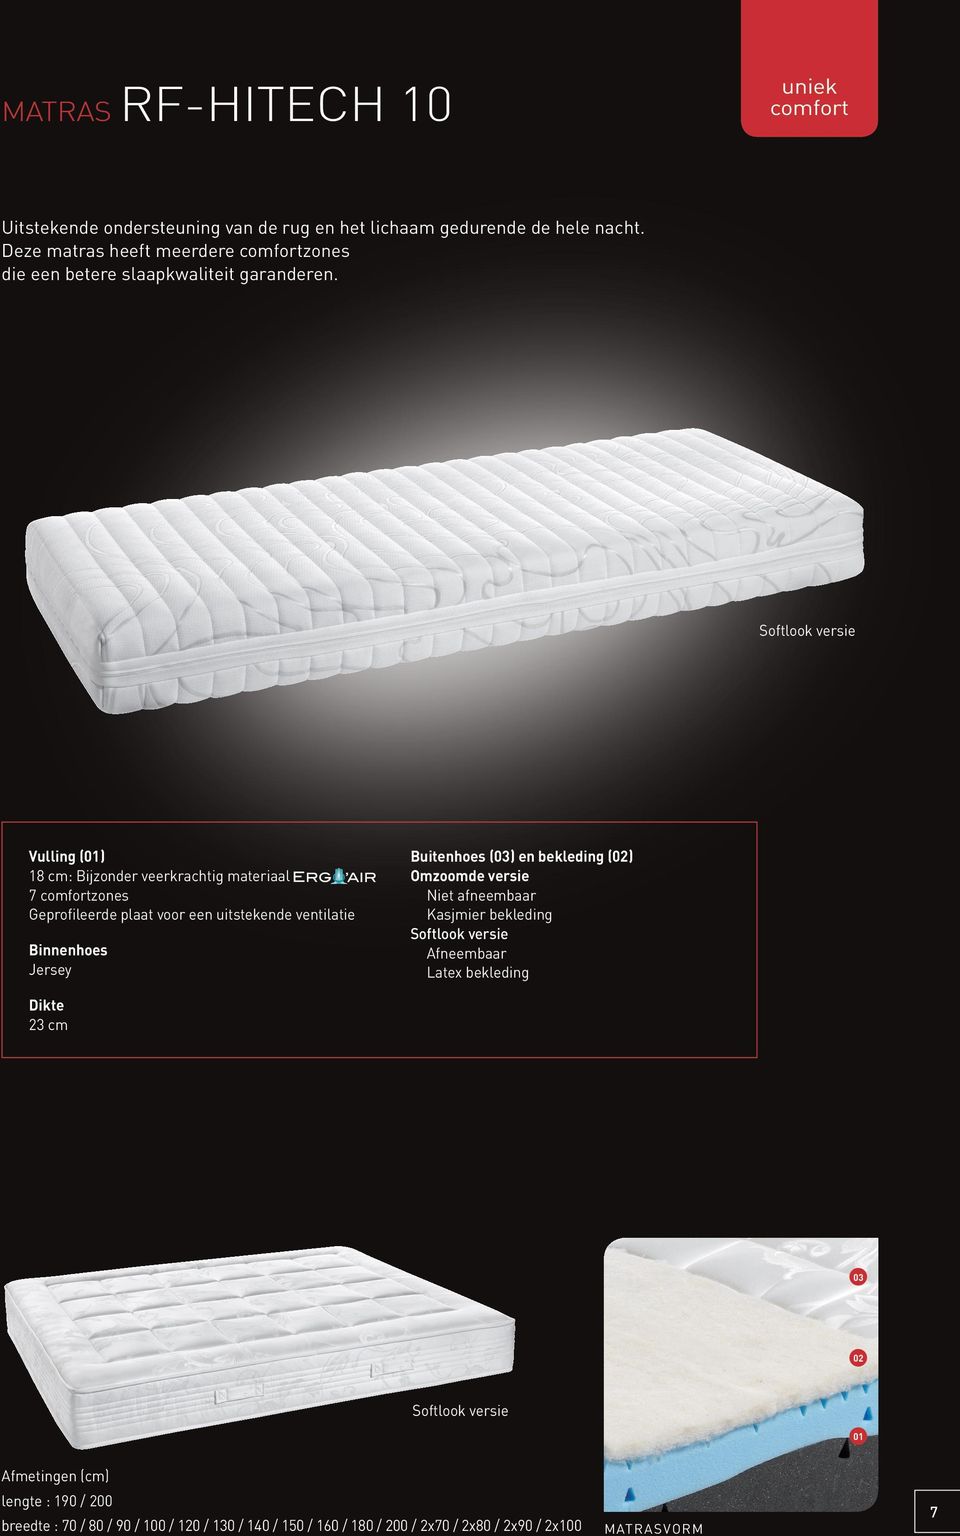 Vulling (01) 18 cm: Bijzonder veerkrachtig materiaal 7 comfortzones Geprofileerde plaat voor een uitstekende ventilatie Binnenhoes Jersey Buitenhoes